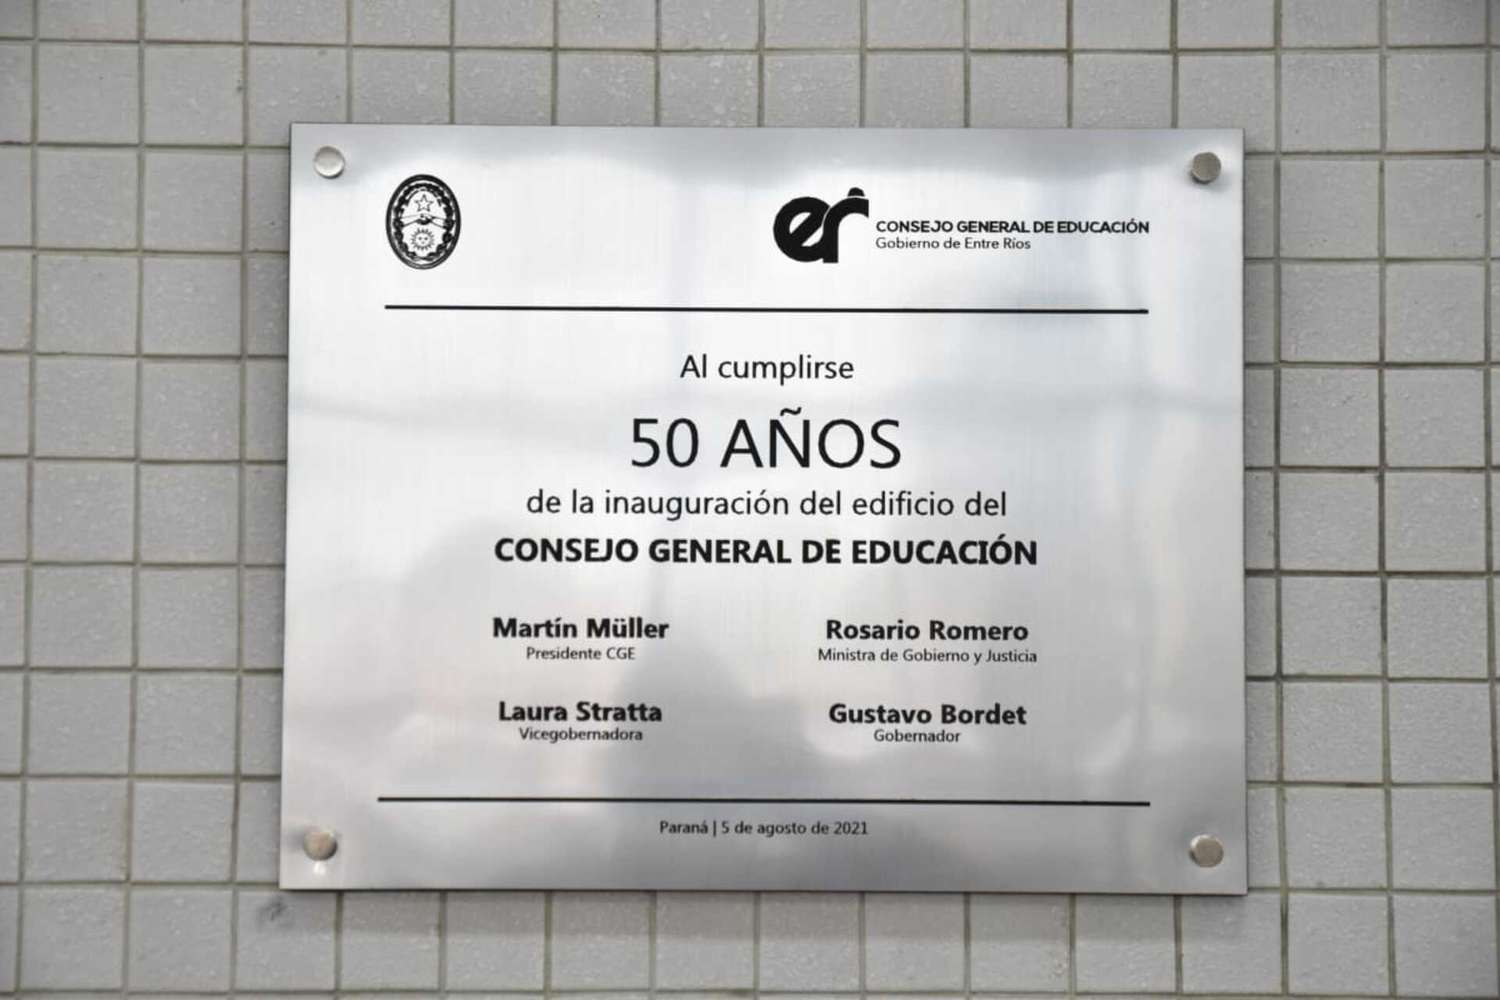 El edificio del CGE cumple 50 años